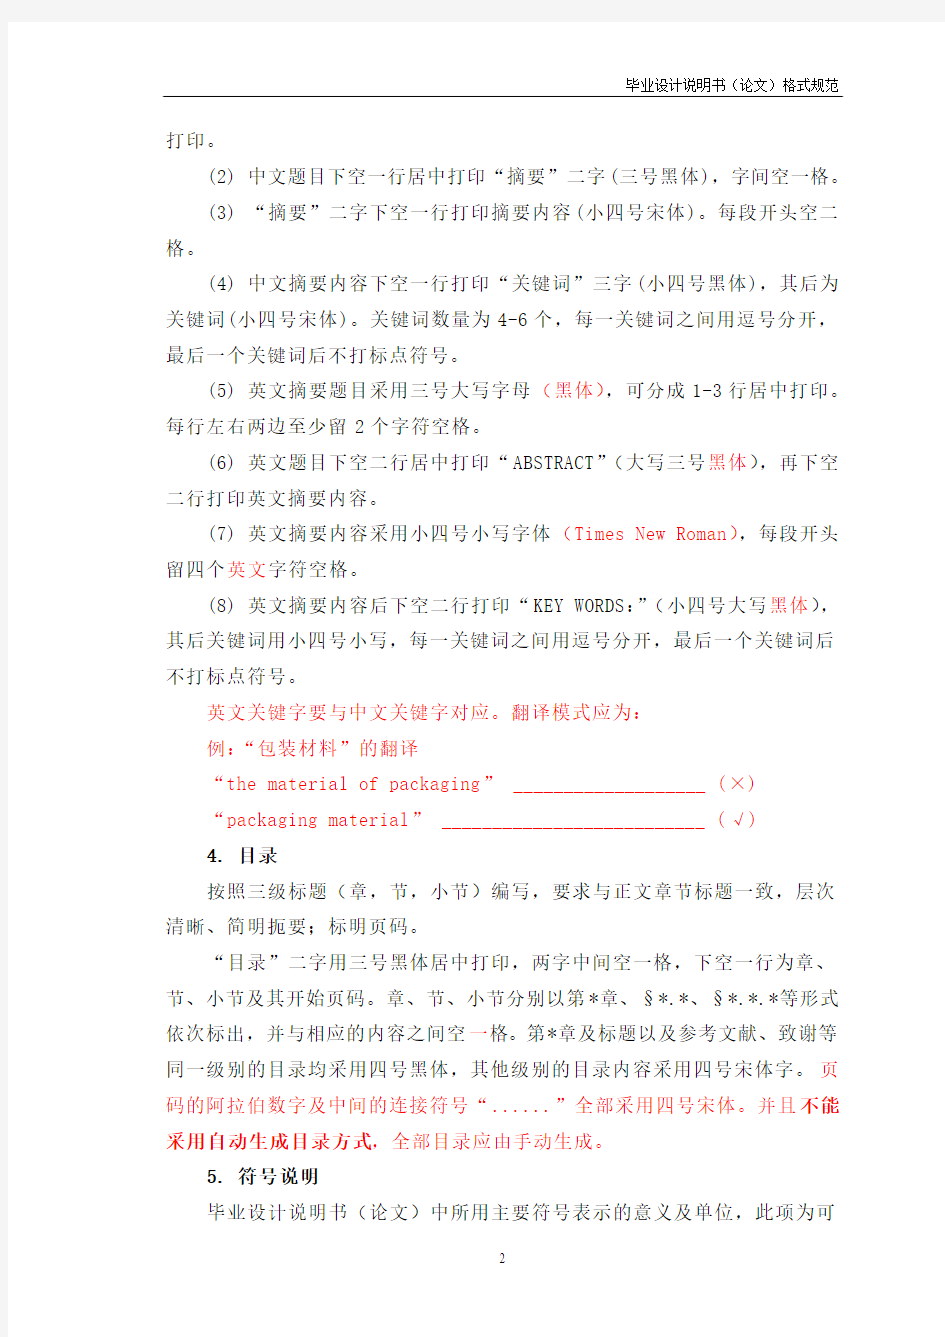 (重要)河南科技大学毕业设计说明书(论文)的格式规范